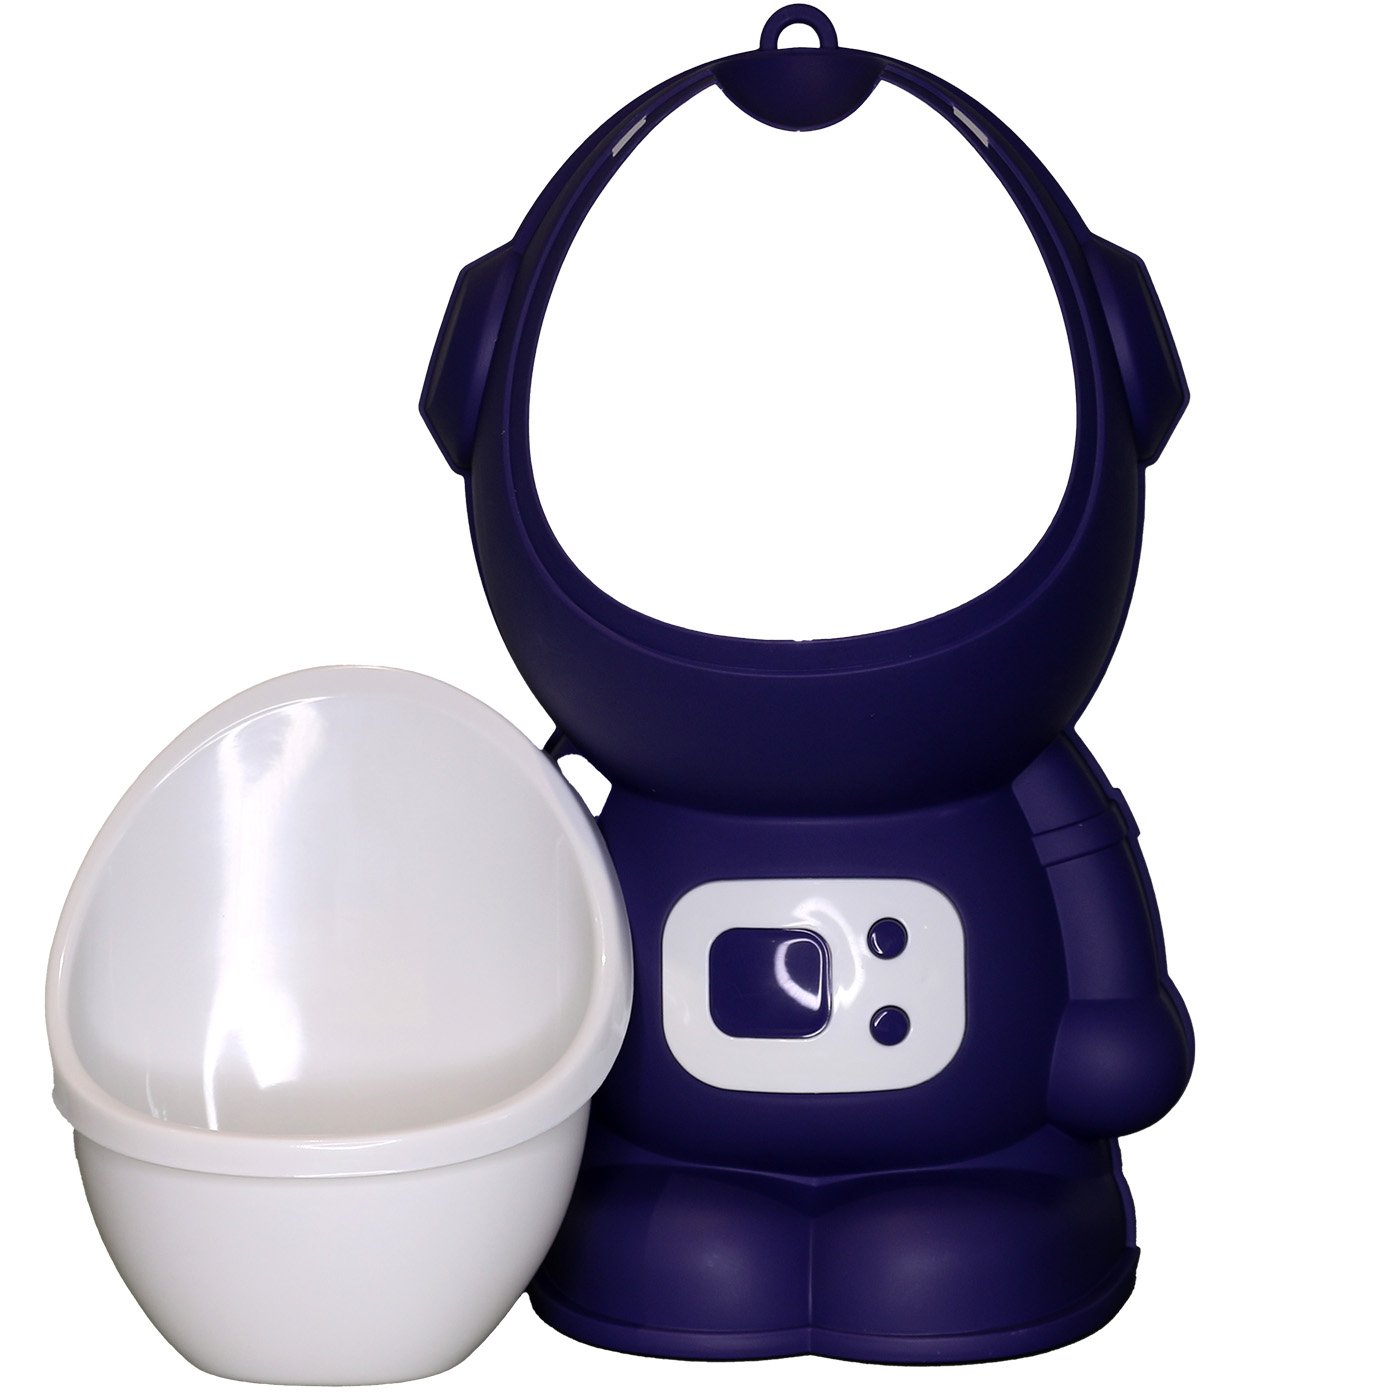 Mictório Infantil Portátil Penico para Meninos Modelo Astronauta Lorben Azul Escuro - 3